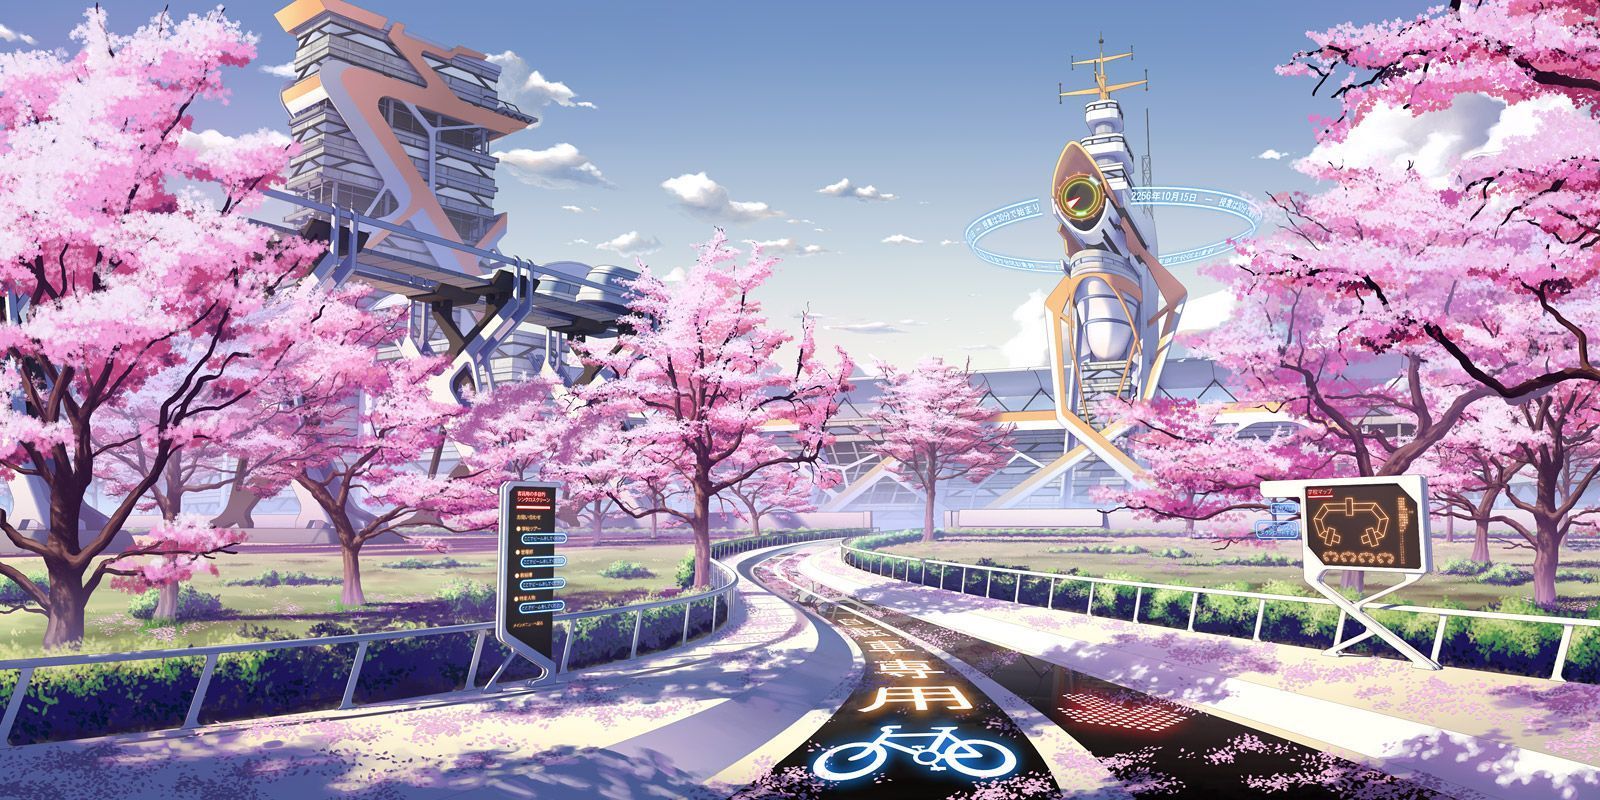 Anime Spring Landscape Wallpaper Free Anime Spring Landscape Background